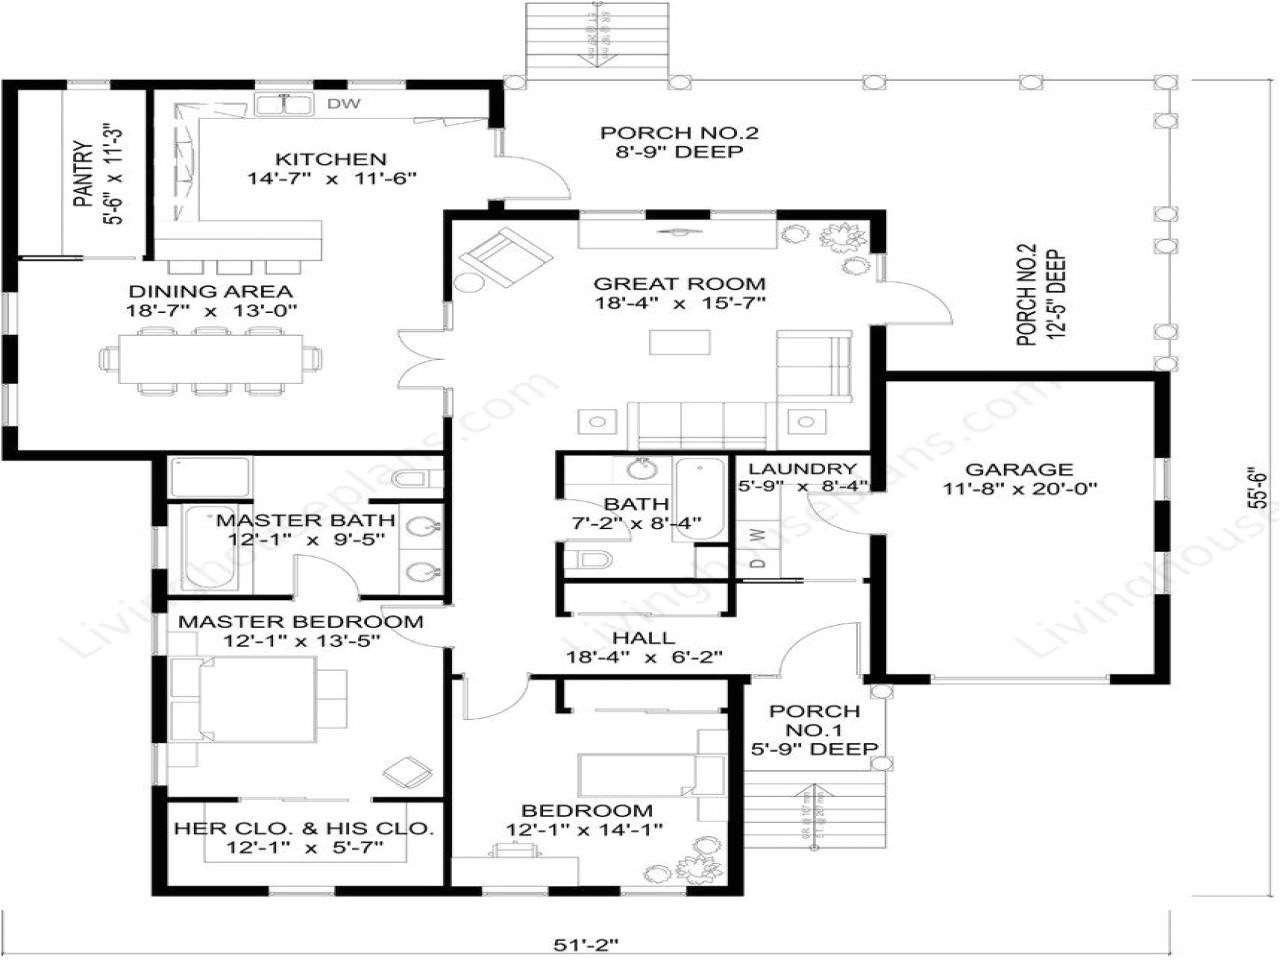 a489ec397685bb8d medieval house floor plan medieval castle plans